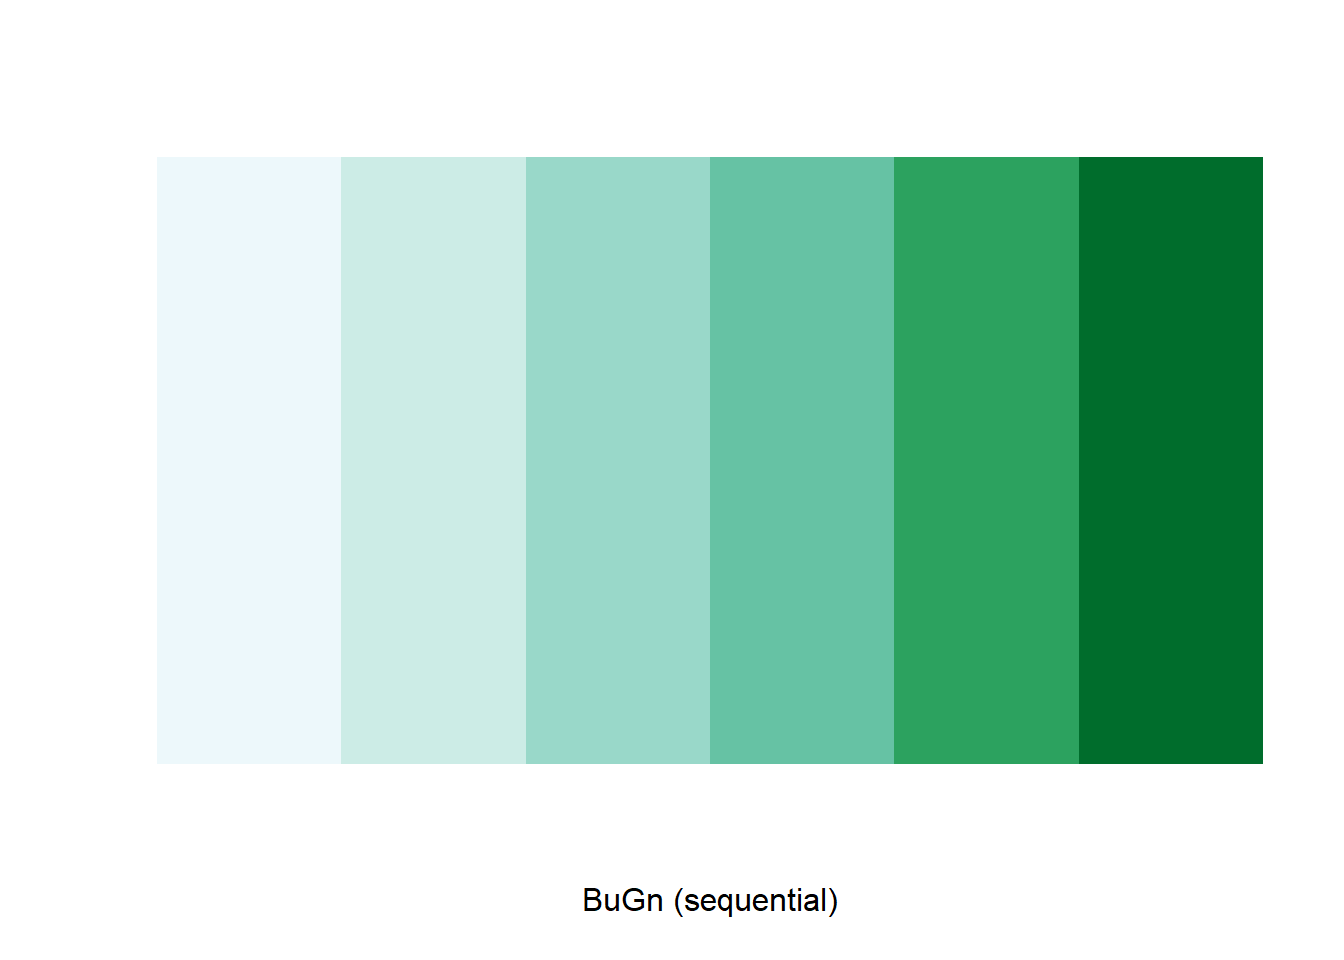 Rectangulo de degradados en 6 etapas de verde. A la izquierda esta el más claro y se va obscurencido a la derecha